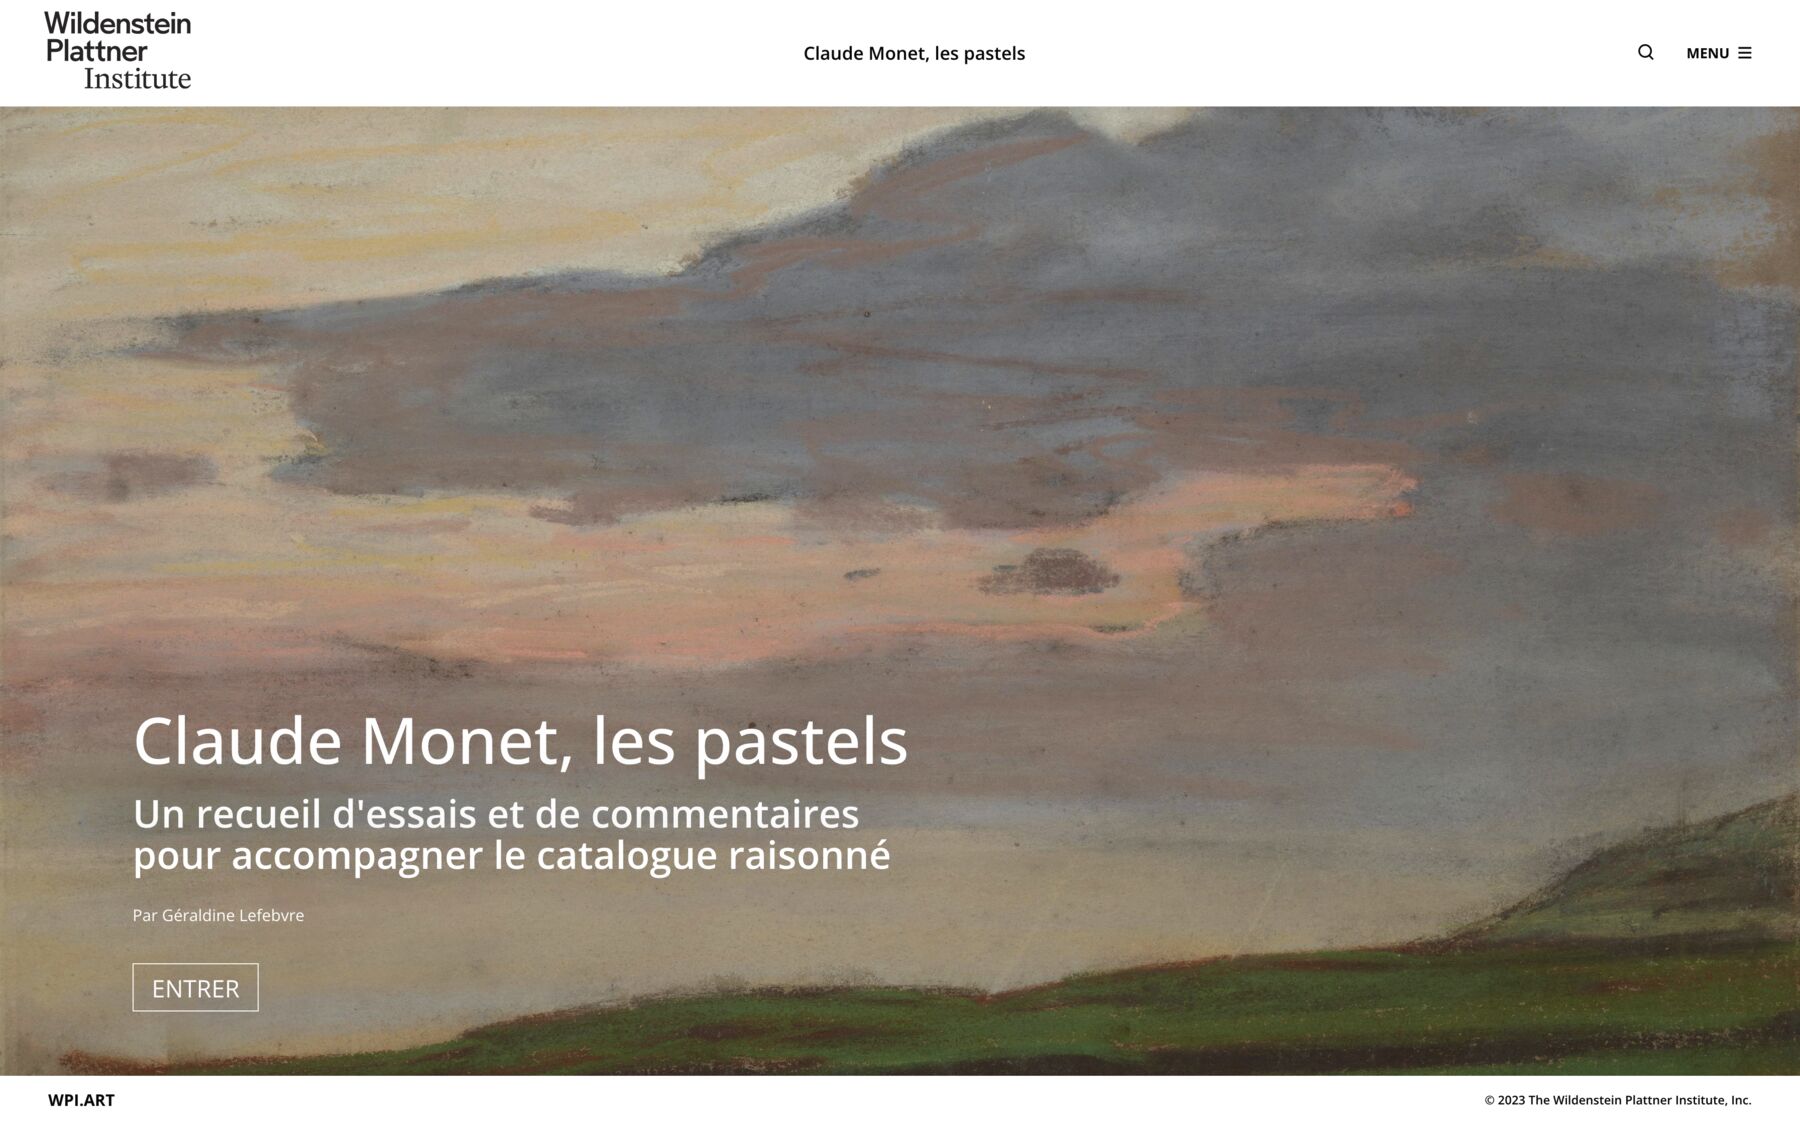 Claude Monet, les pastels. Un recueil d’essais et de commentaires pour accompagner le catalogue raisonné. Par Geraldine lefebvre